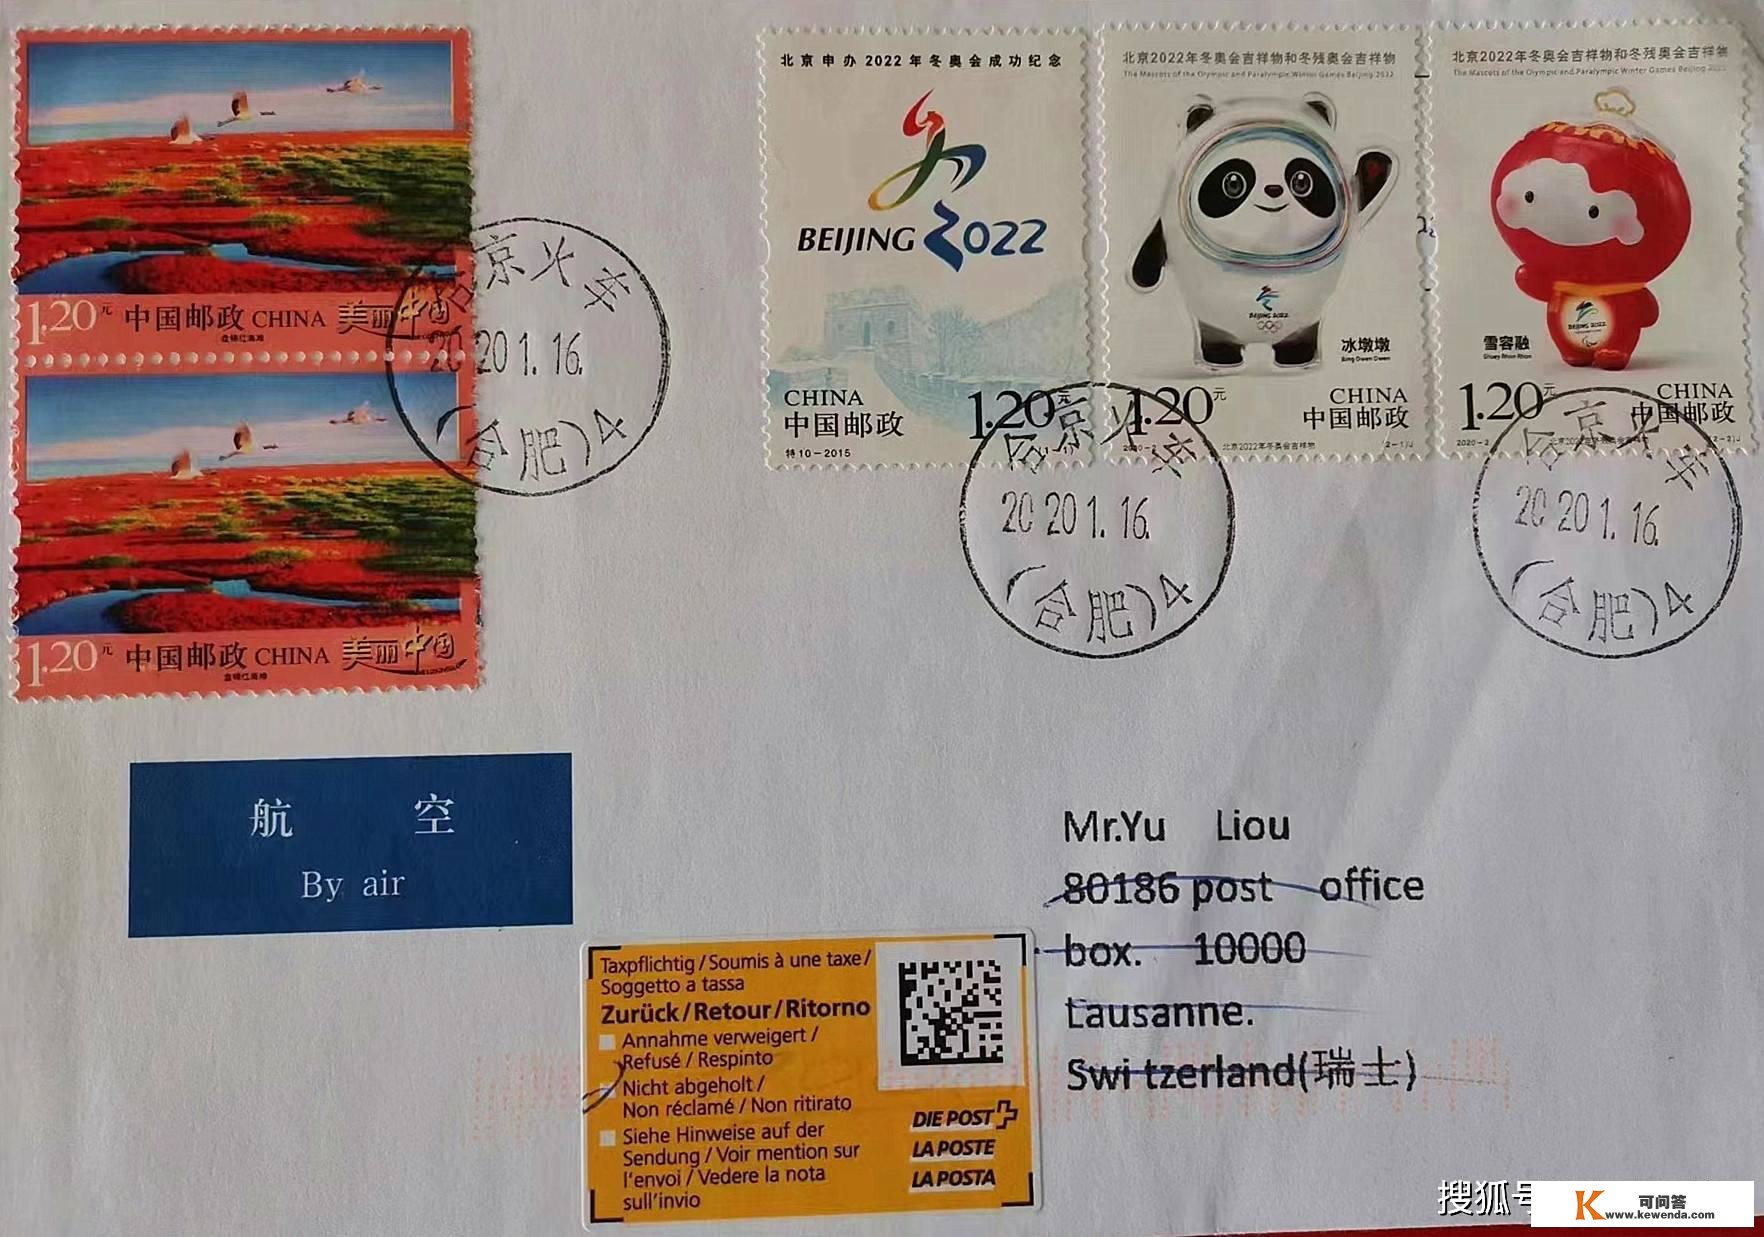 《北京2022年冬奥会不祥物和冬残奥会不祥物》冰墩墩雪容融邮票发行3周年纪念